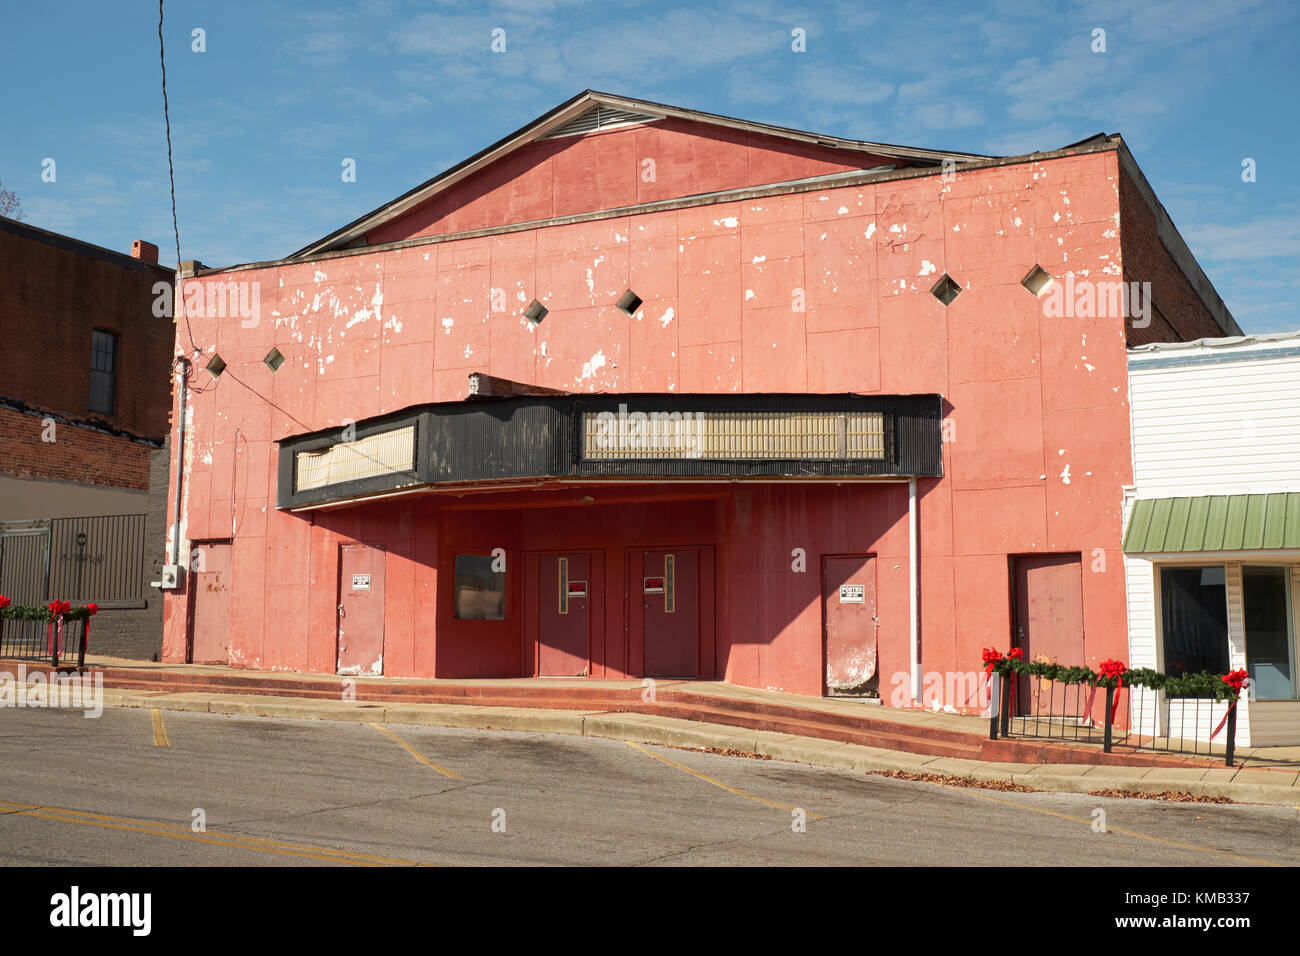 Extérieur d'un cinéma abandonné, théâtre, théâtre en communauté rurale de clanton Alabama, Etats-Unis. Banque D'Images